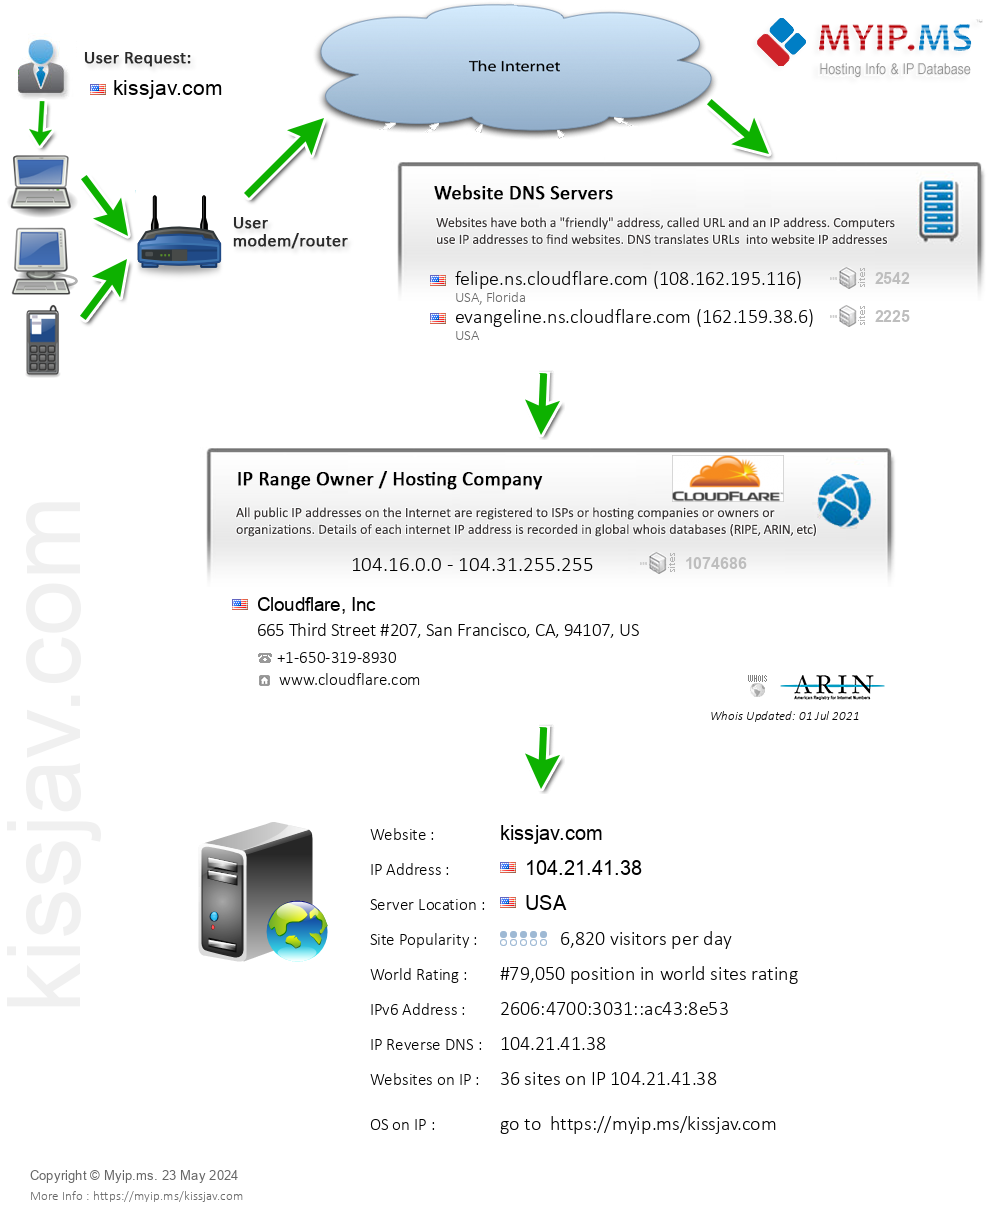 Kissjav.com - Website Hosting Visual IP Diagram